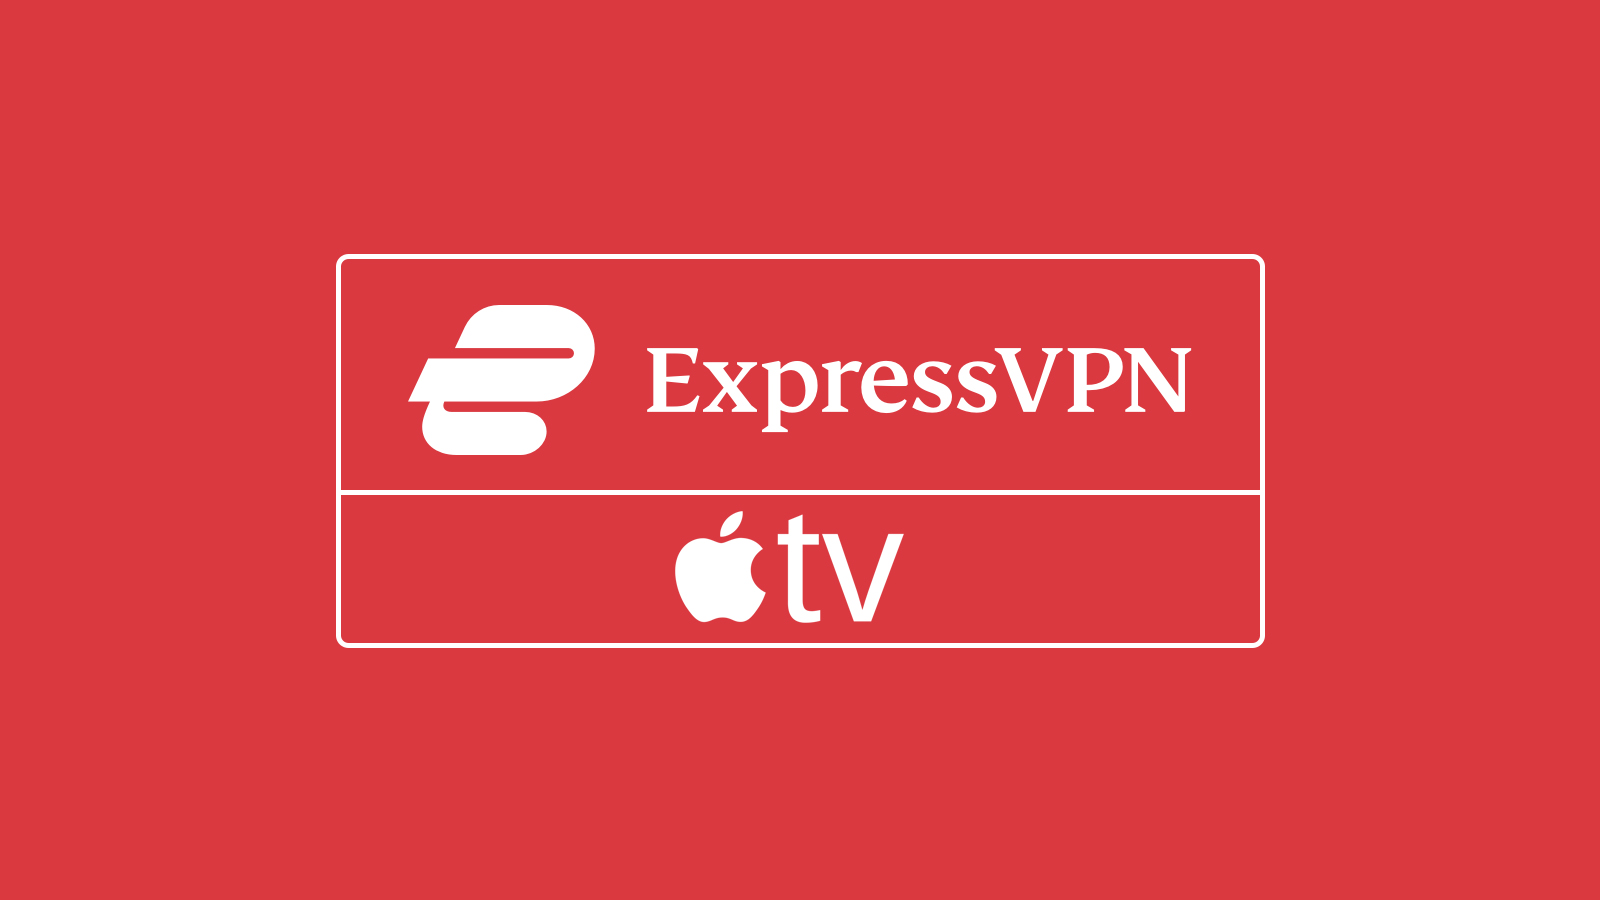 slutningen stemning vokal How to Set Up and Use ExpressVPN on Apple TV [Under 5 Mins]